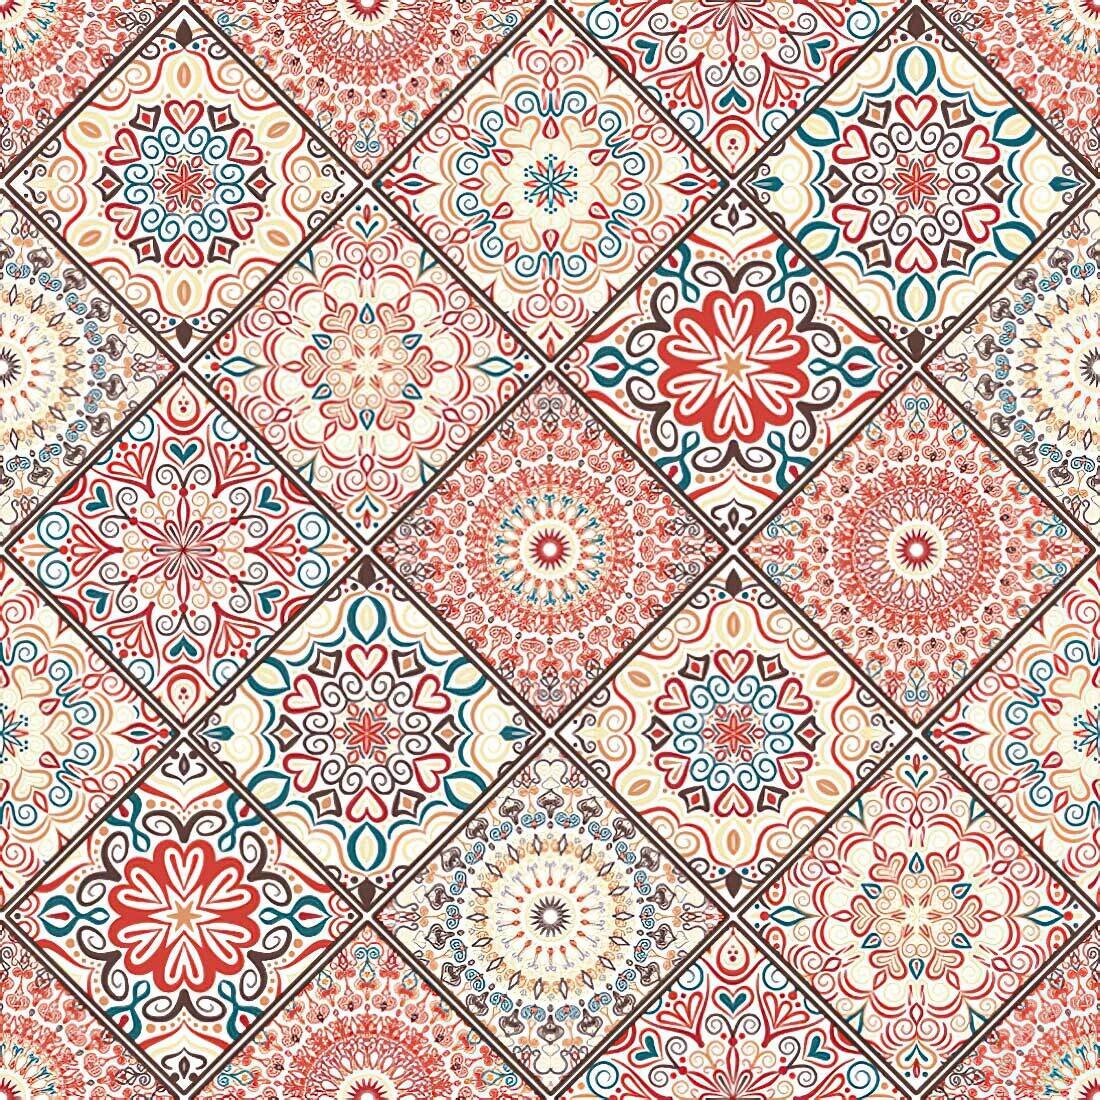 Decoupage Paper Napkins - Pattern - Mandala Boho Chic Style (1 Sheet) Out of Stock